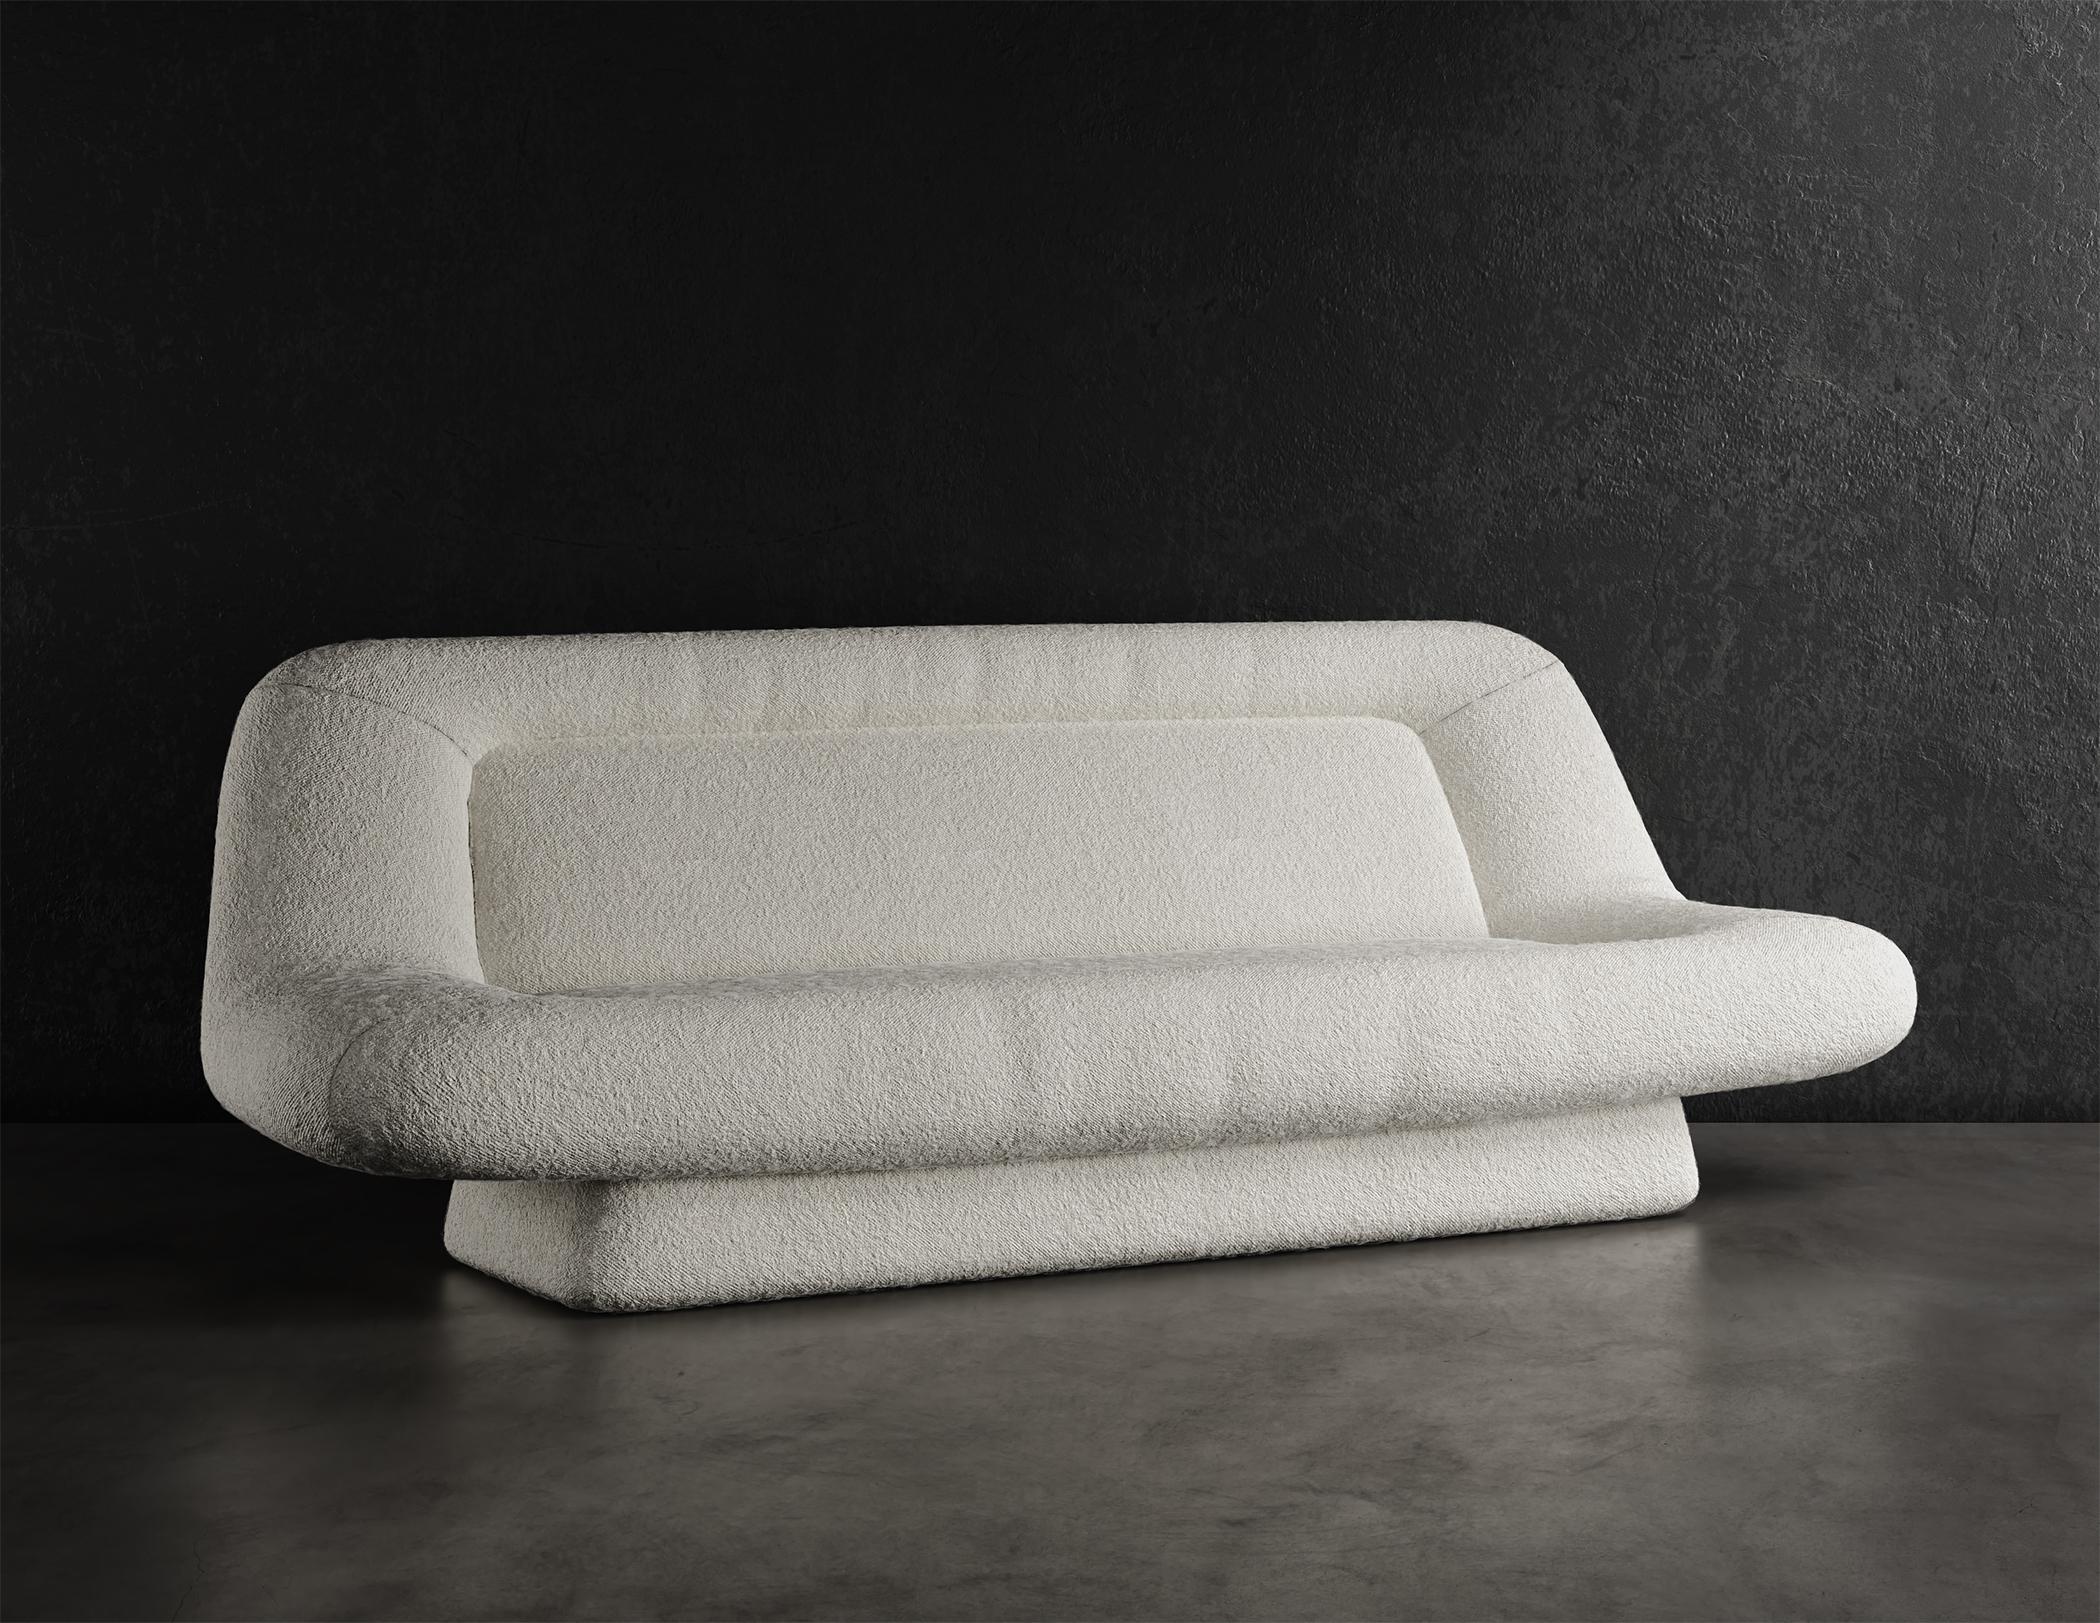 WAVE SOFA - Design Modern en Cloud Boucle en Warm White

Le canapé Wave est un meuble moderne et élégant qui ajoutera une touche d'élégance à n'importe quelle pièce. Il est garni d'un luxueux tissu bouclé nuageux d'un blanc chaud, qui est non